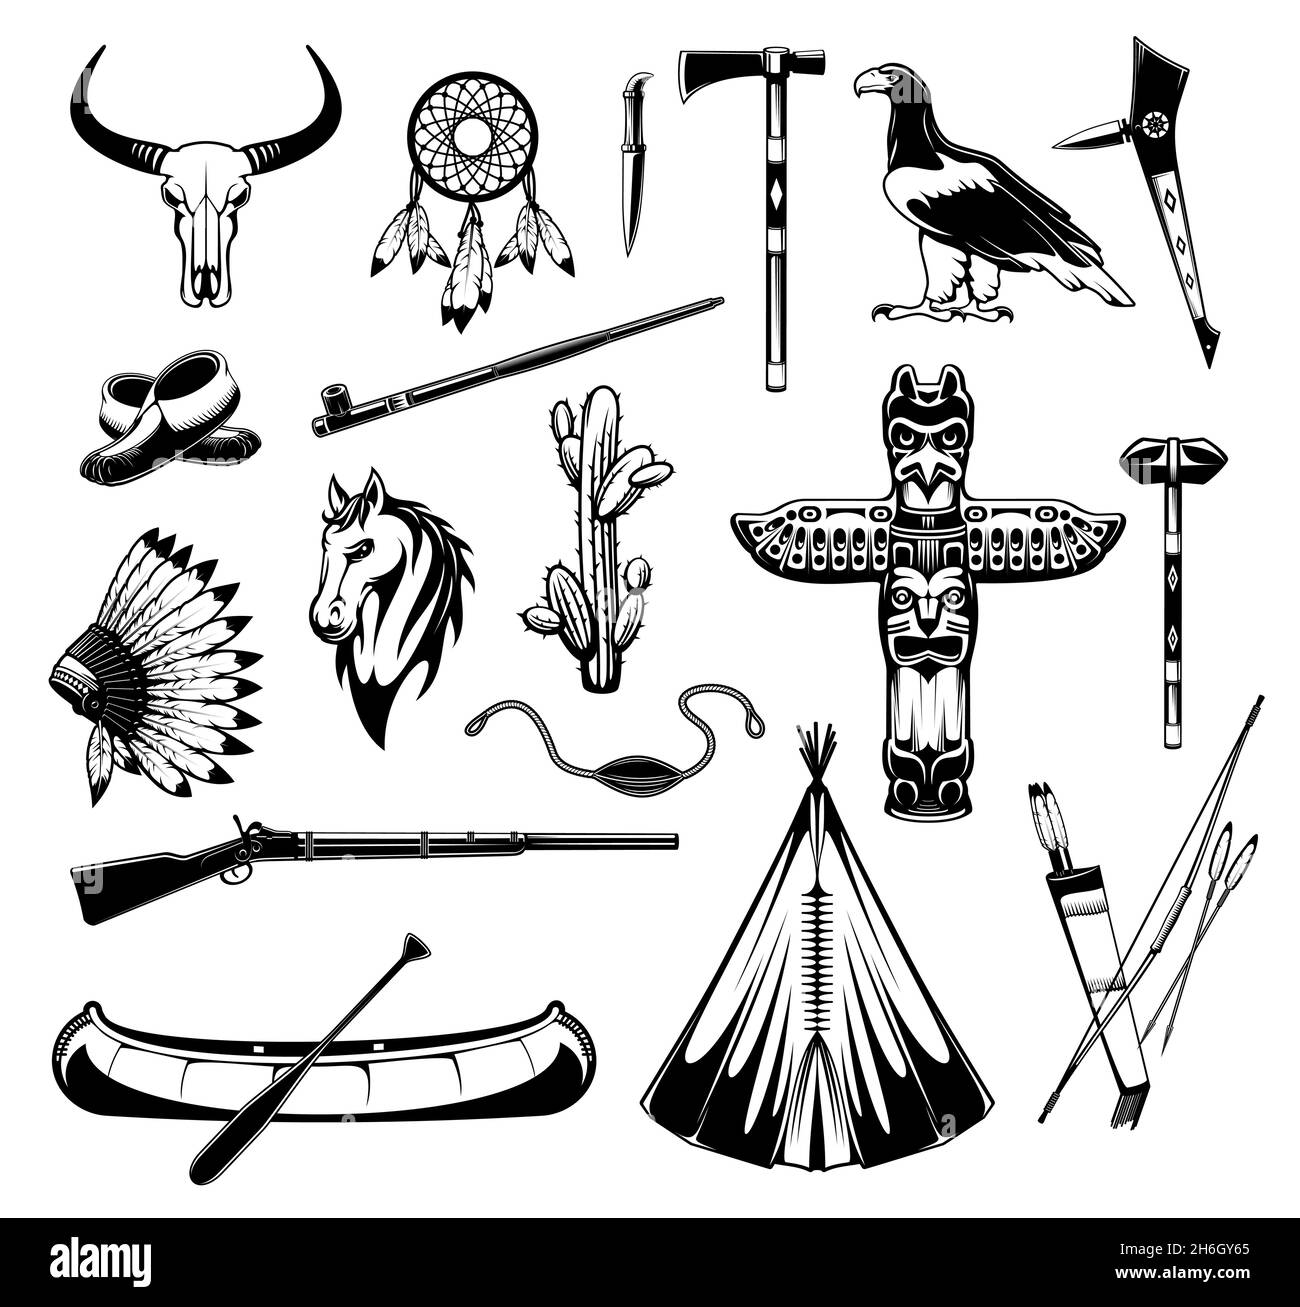 Indianische Ureinwohner Gegenstände und Waffen-Ikonen, Vektor-Stammessymbole. Amerikanisch-indischer Tomahawk und Kanuboot, Apache Chief Feather Kopfschmuck und tot Stock Vektor